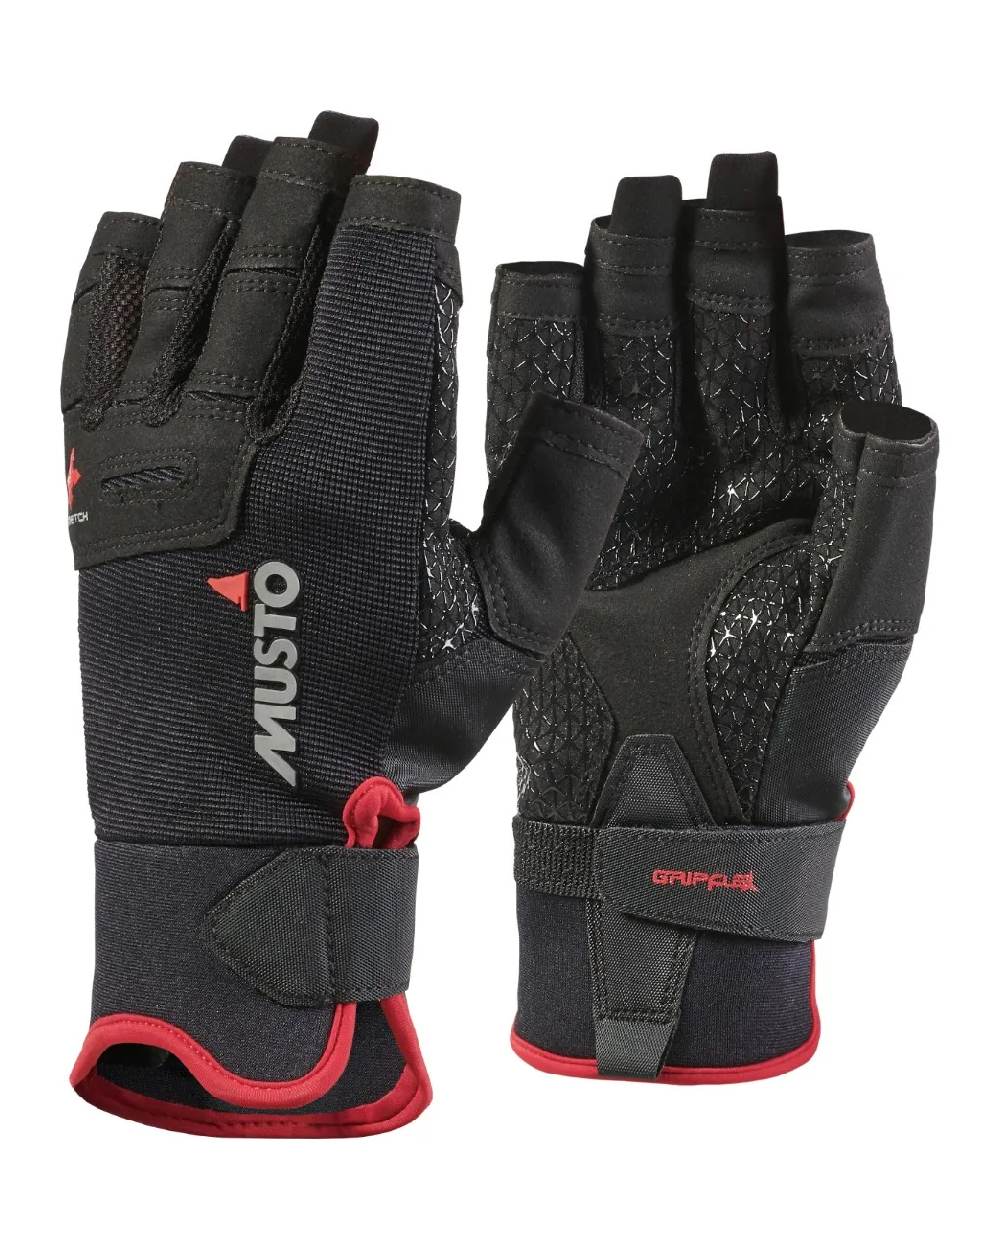 Musto Performance Short Finger Gloves in Black 